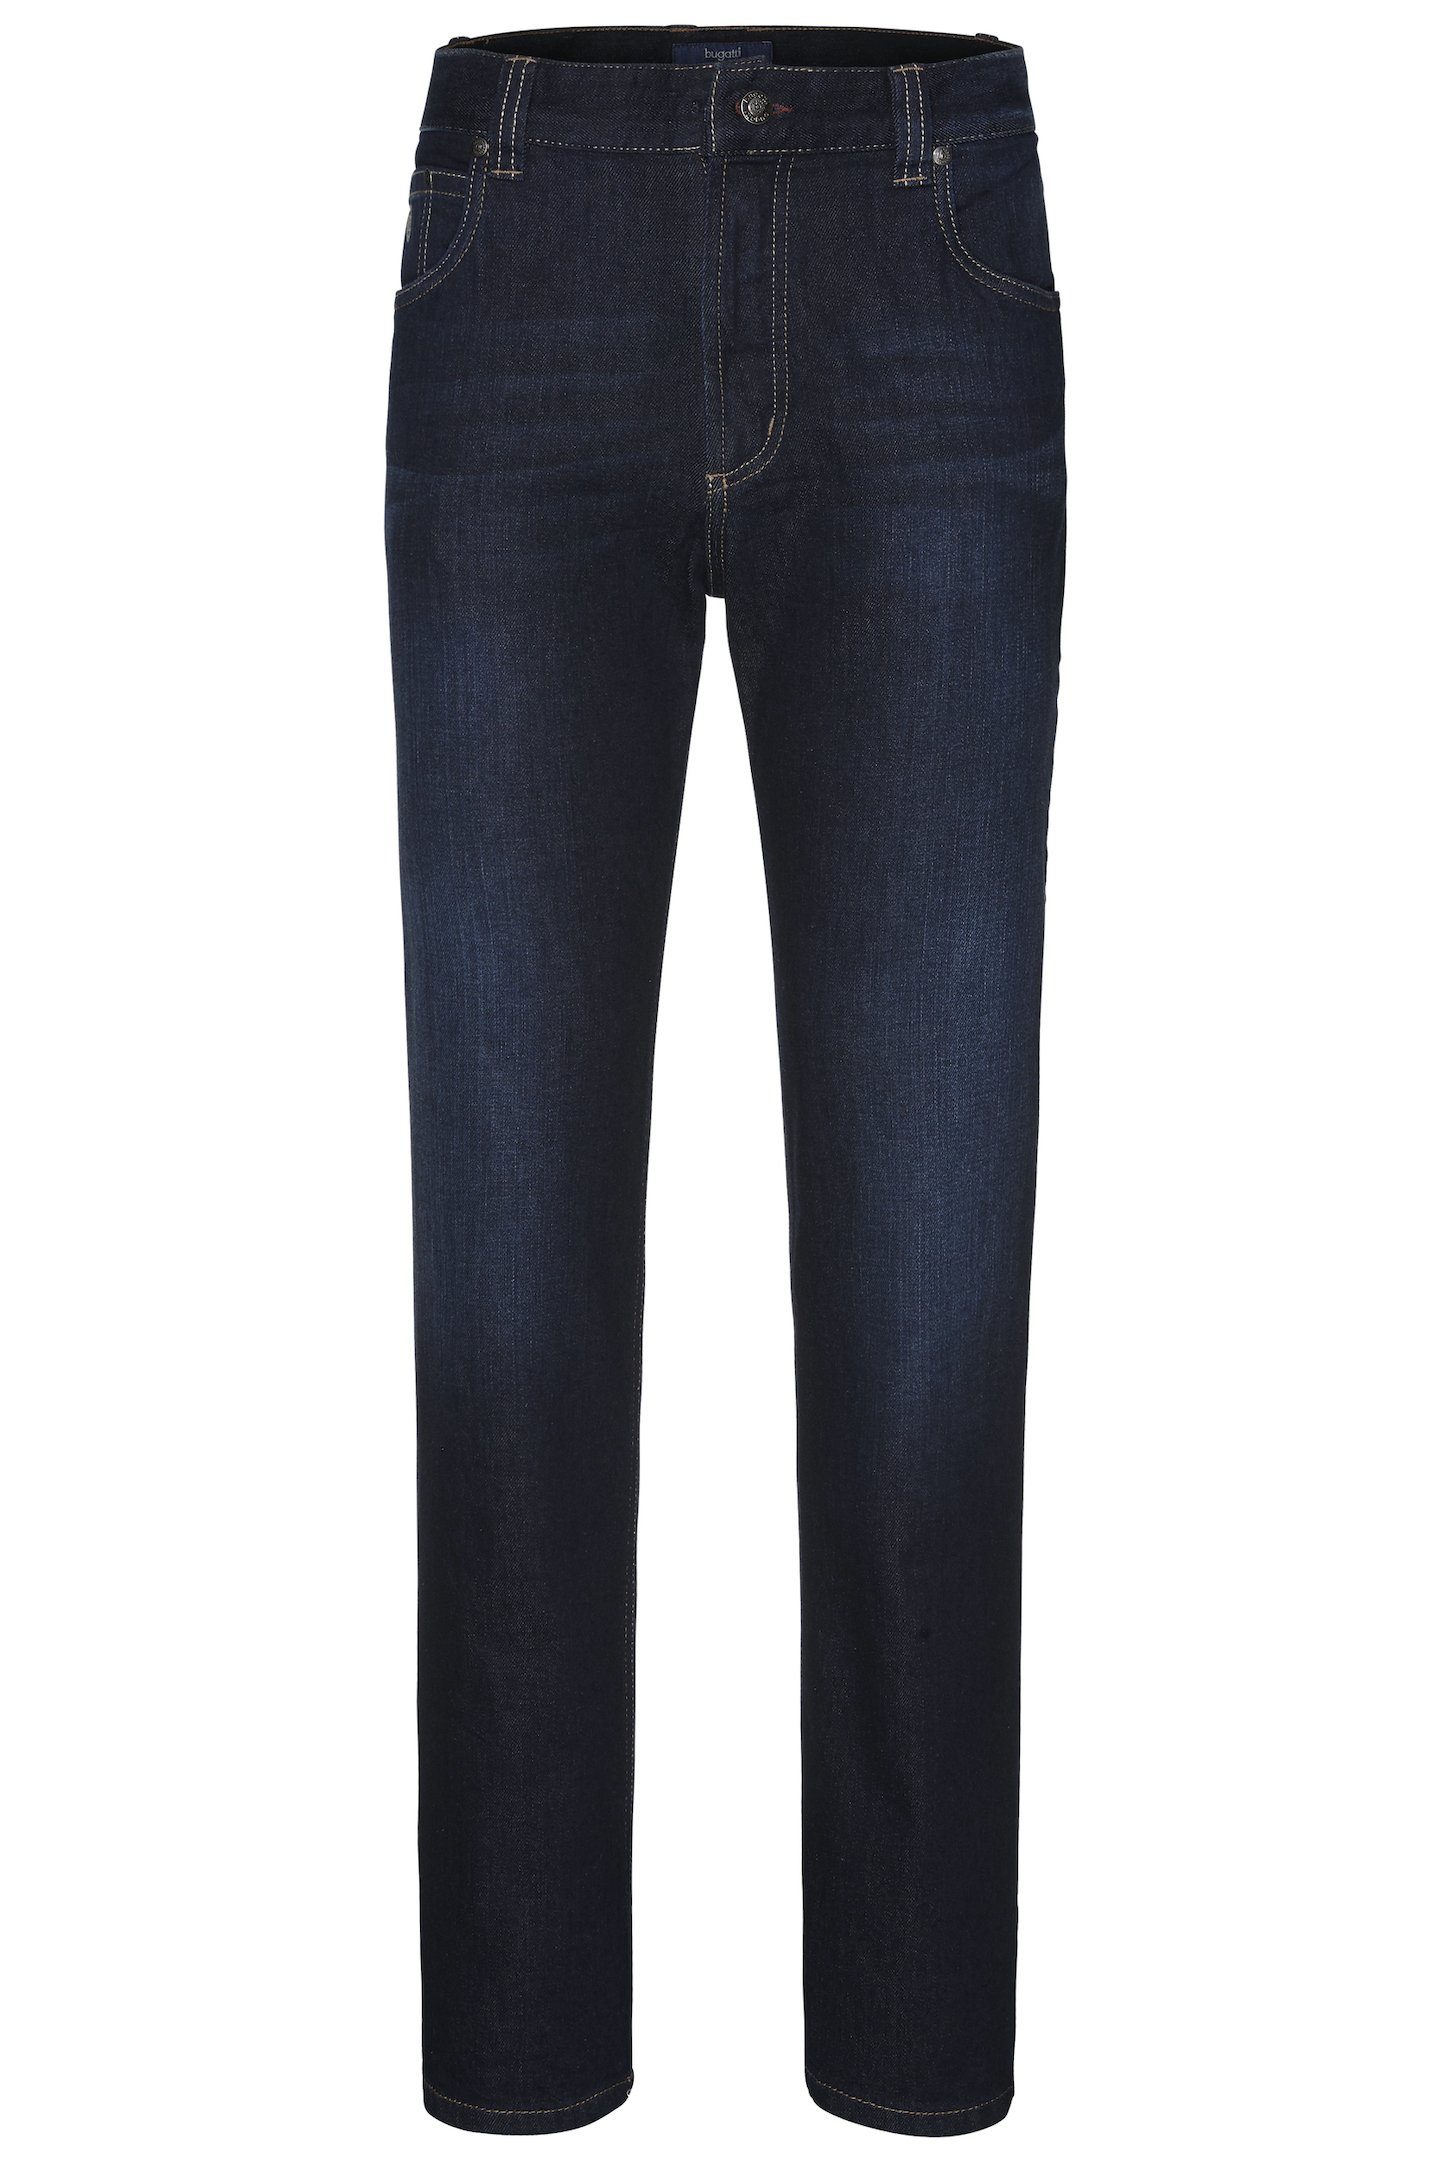 5-Pocket-Jeans denim mit Stretch Comfort d.blau bugatti